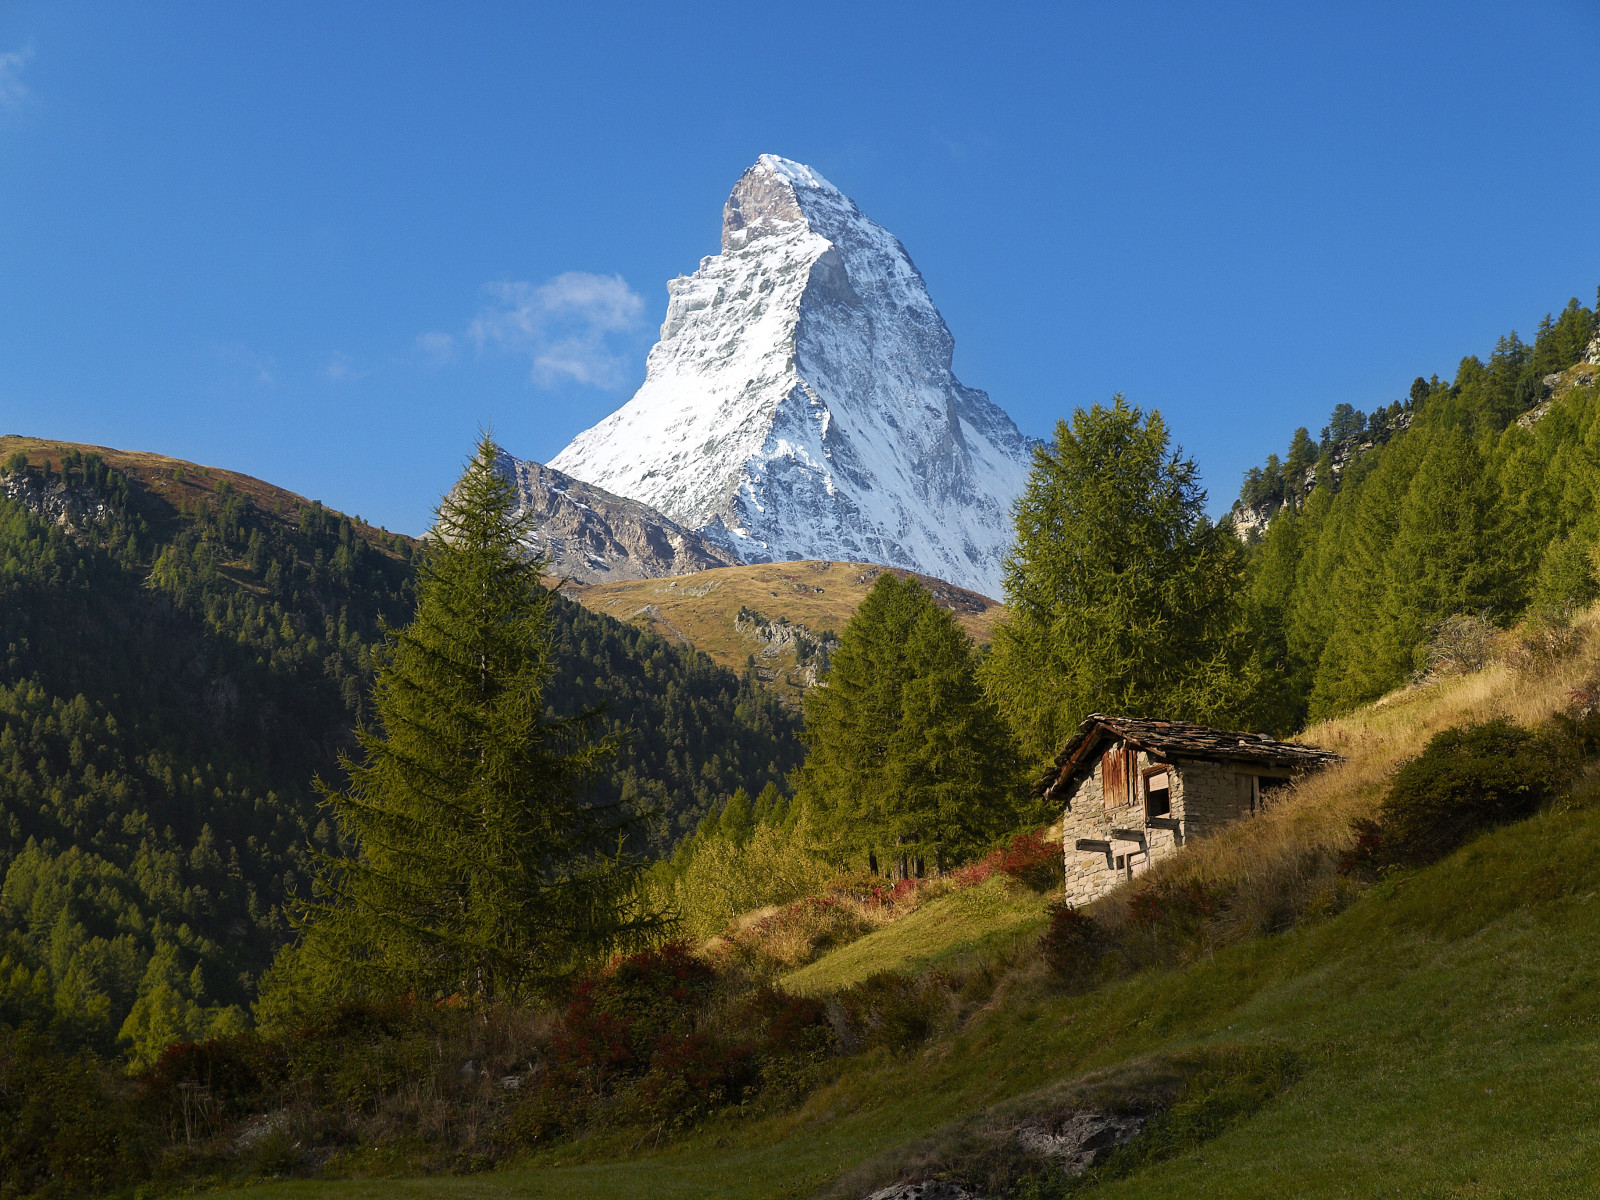 màu xanh da trời, bầu trời, nhà ở, Thụy sĩ, Vật chất, cây, núi, Dãy núi Alps